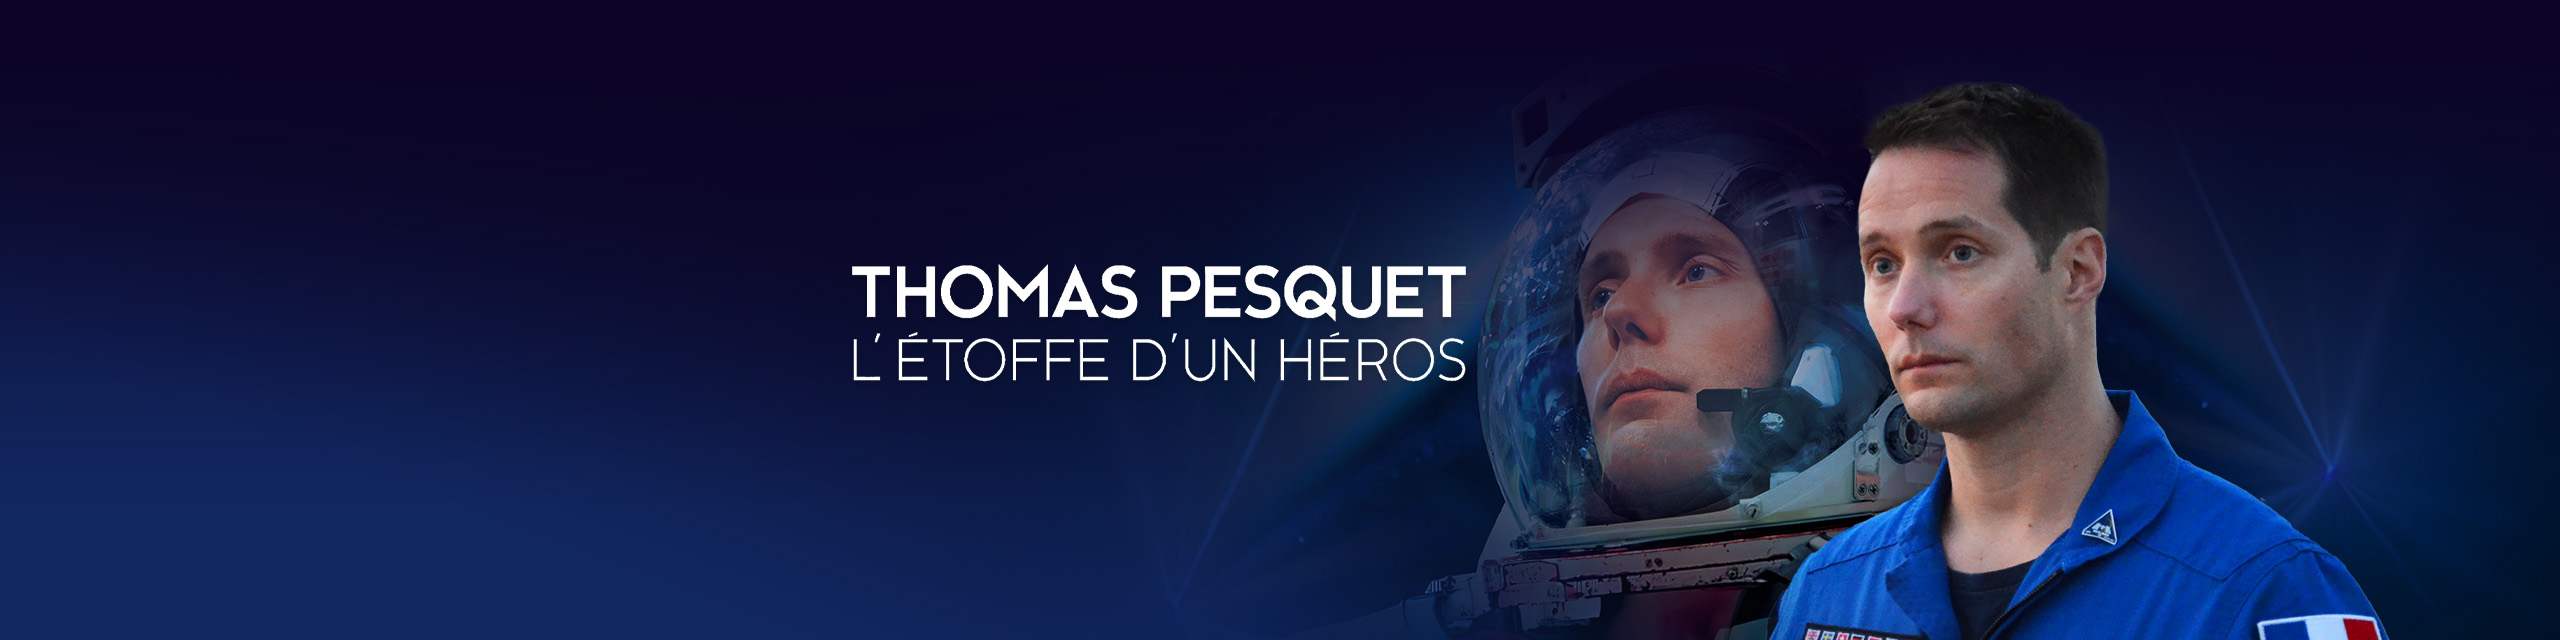 Thomas Pesquet : l'étoffe d'un héros